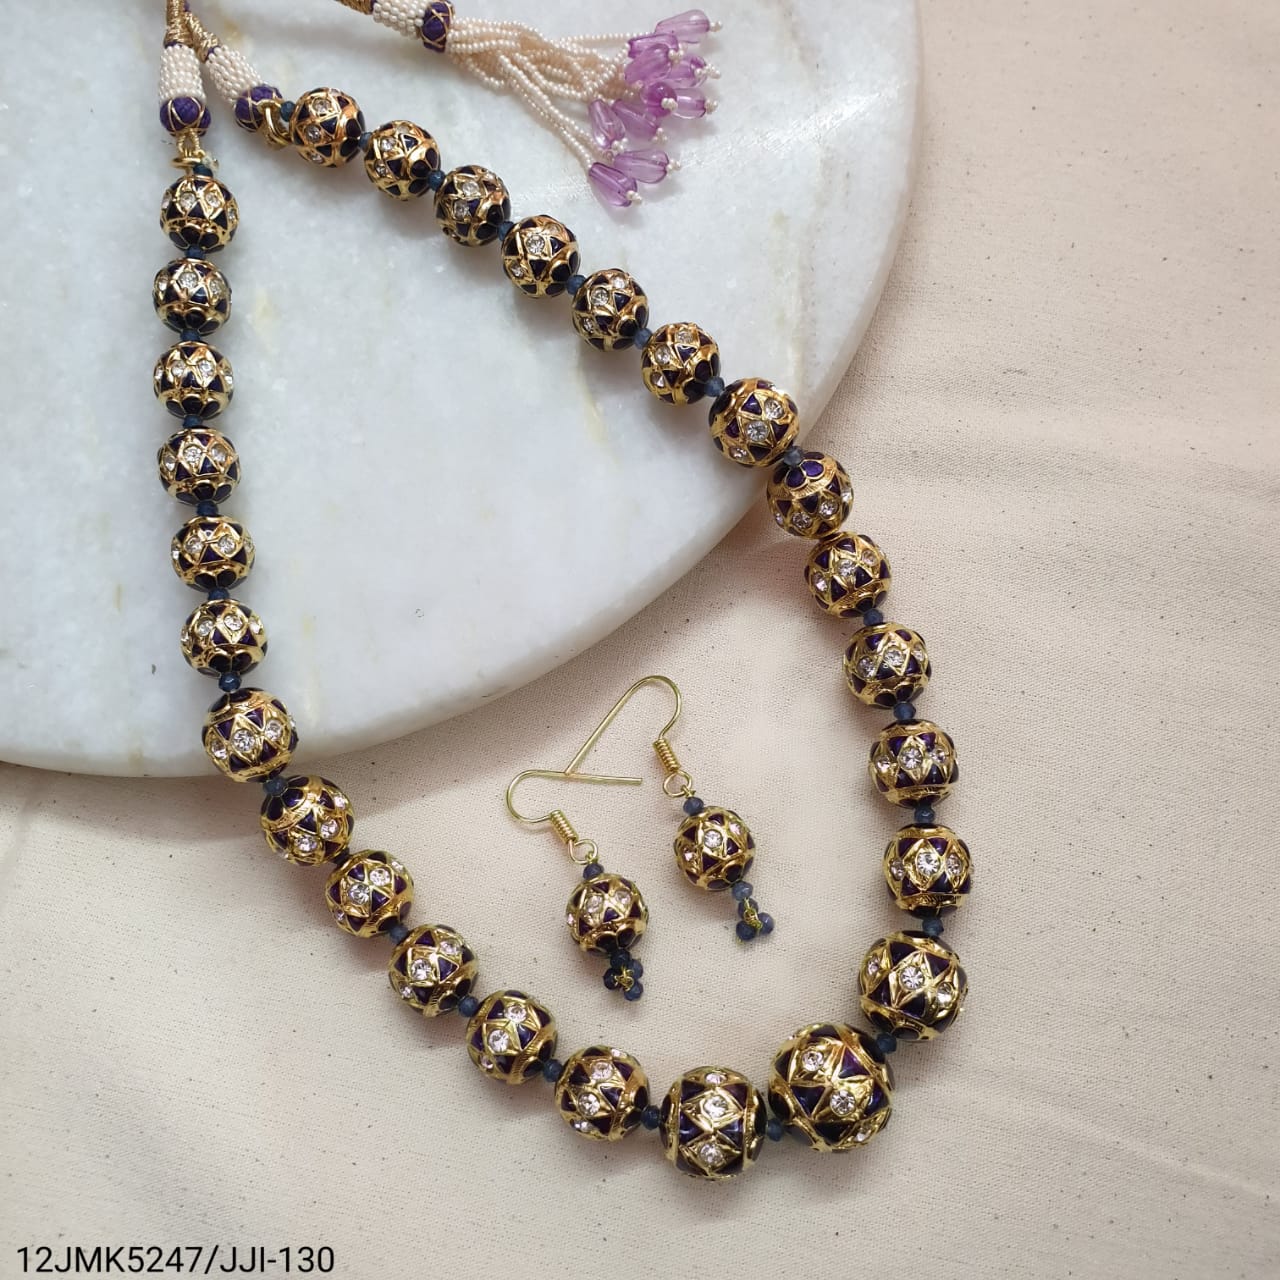 Purple Meenakari Beaded Necklace With Earrings